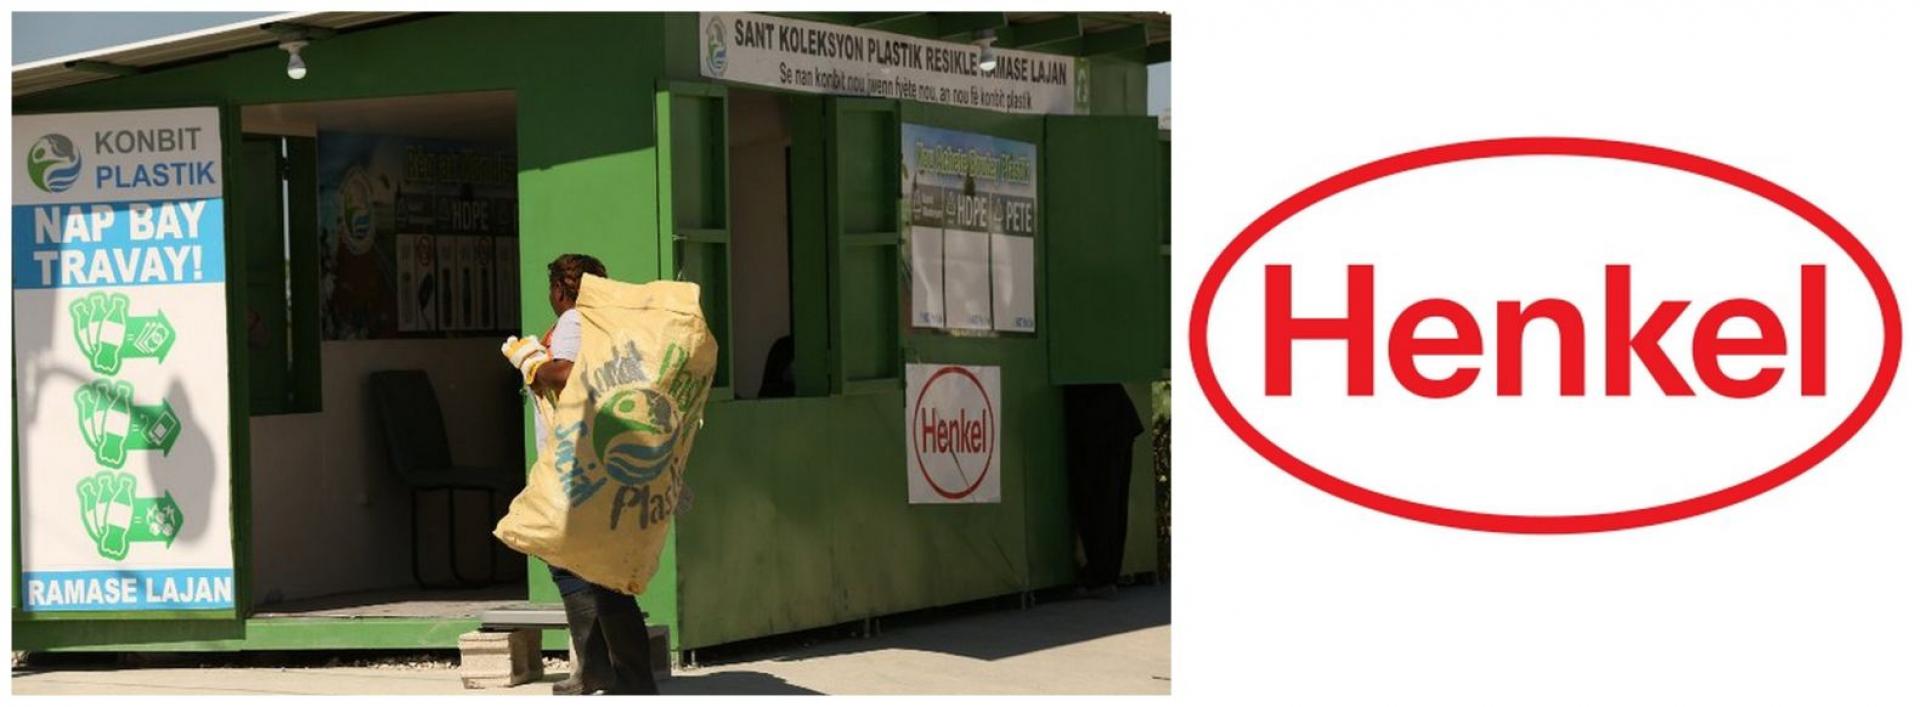 Henkel wprowadza opakowania z odpadów pochodzących ze społecznej zbiórki 